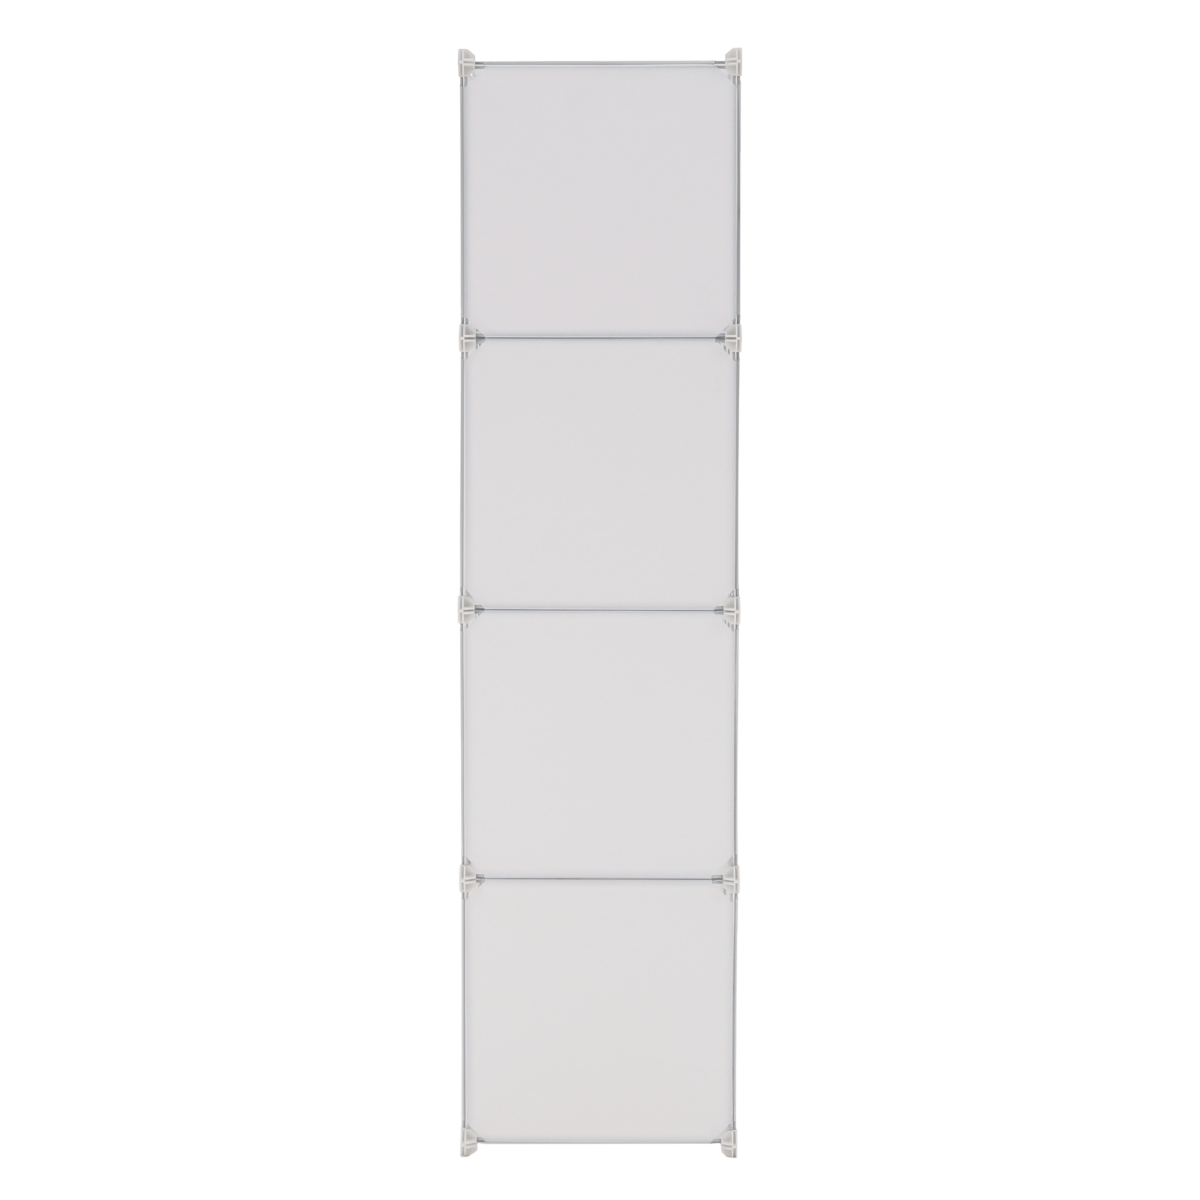 Gyerek moduláris szekrény, fehér/barna minta, KIRBY